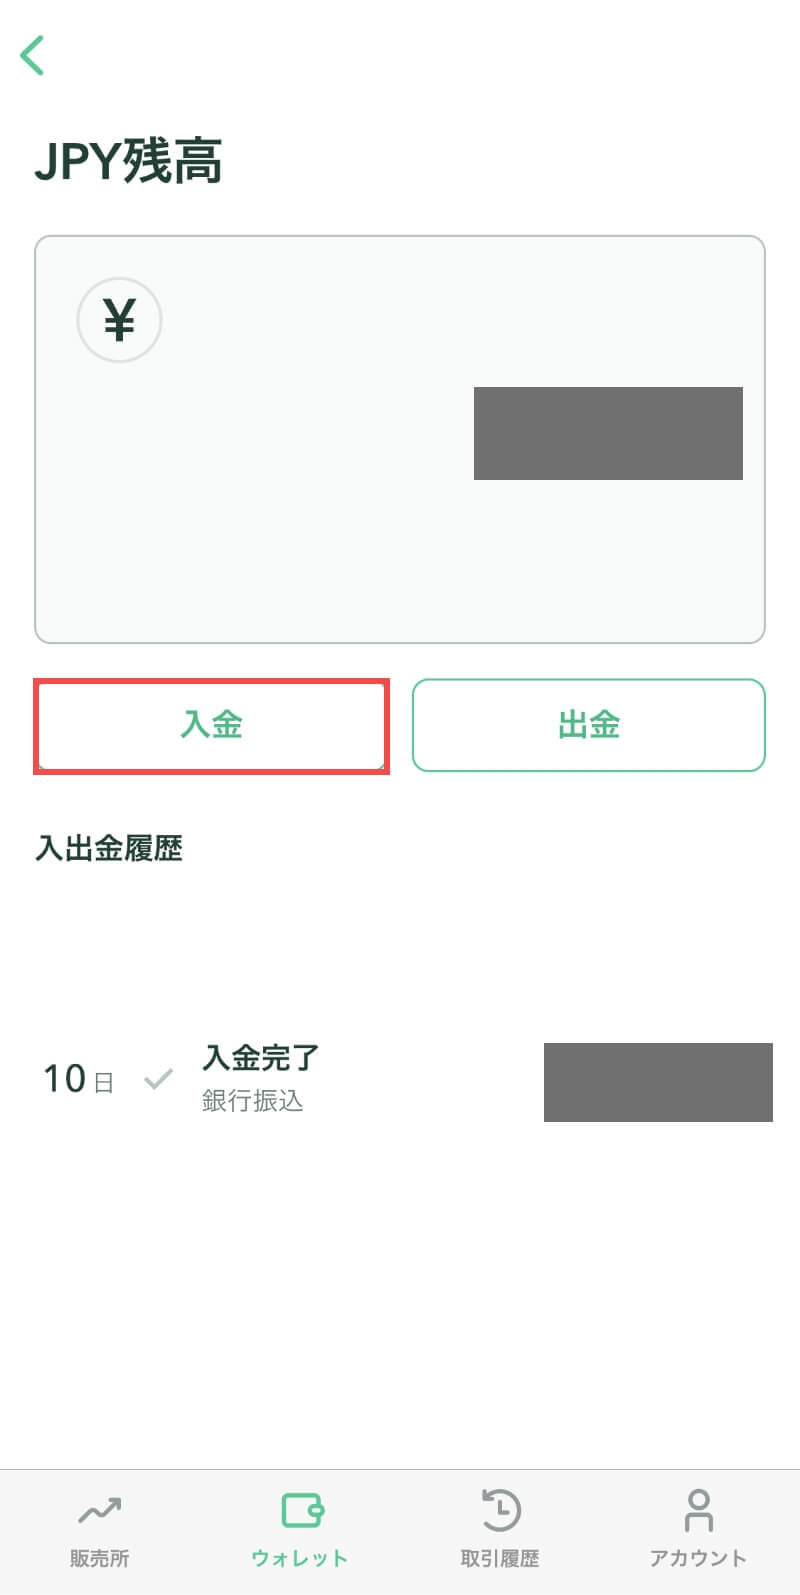 コインチェックアプリのJPY(日本円)残高画面